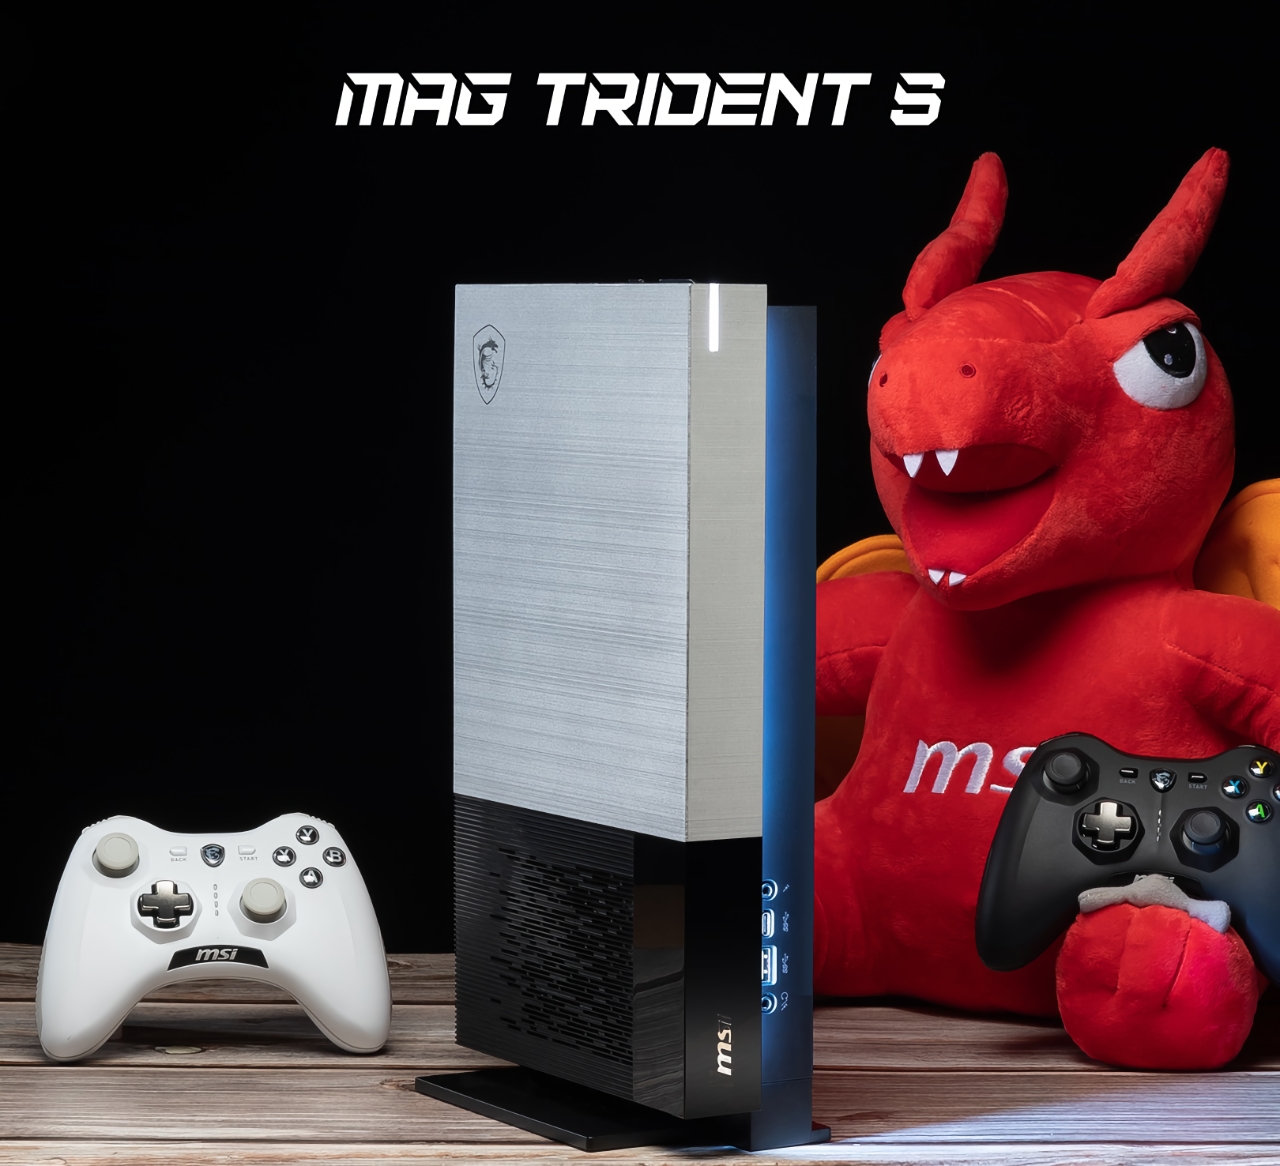 Unerwartet: MSI wird die Spielekonsole MAG Trident S mit einem AMD Ryzen 7 5700G Prozessor an Bord veröffentlichen